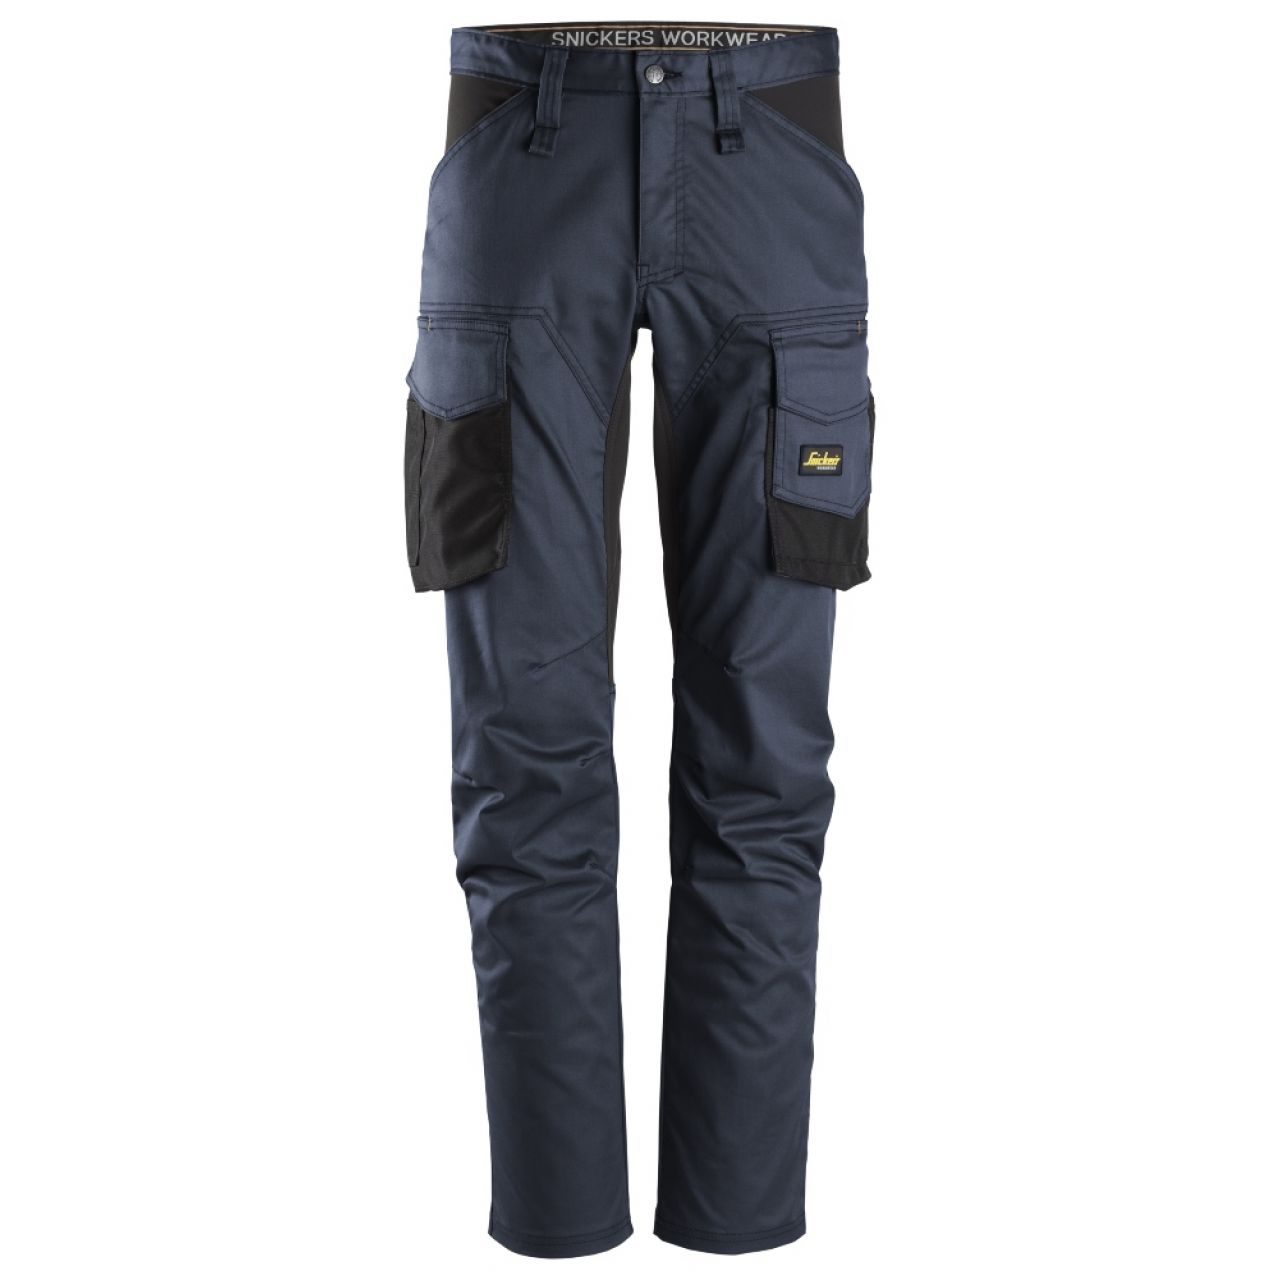 6803 Pantalones largos de trabajo elásticos sin bolsillos para las rodilleras AllroundWork azul marino-negro talla 250